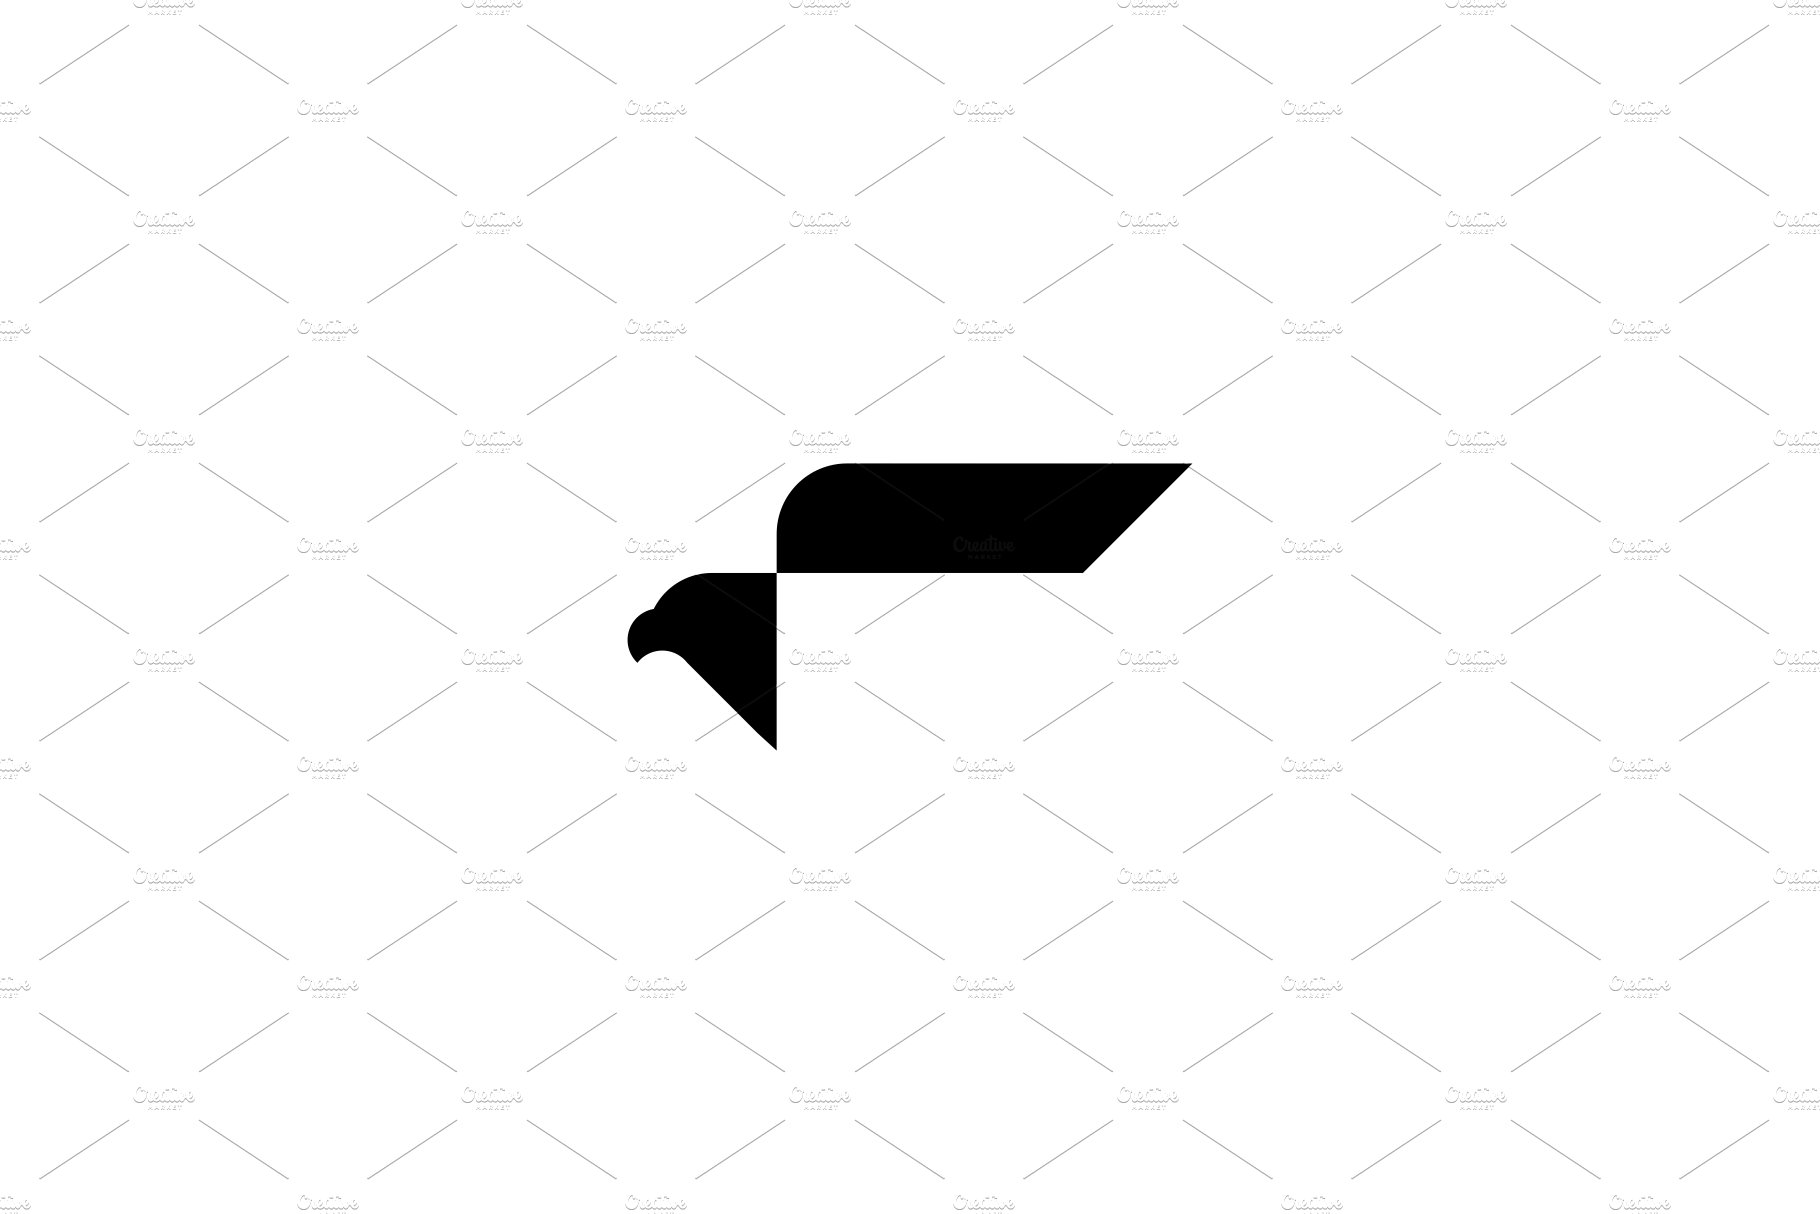 eagle falcon bird logo vector icon cover image.